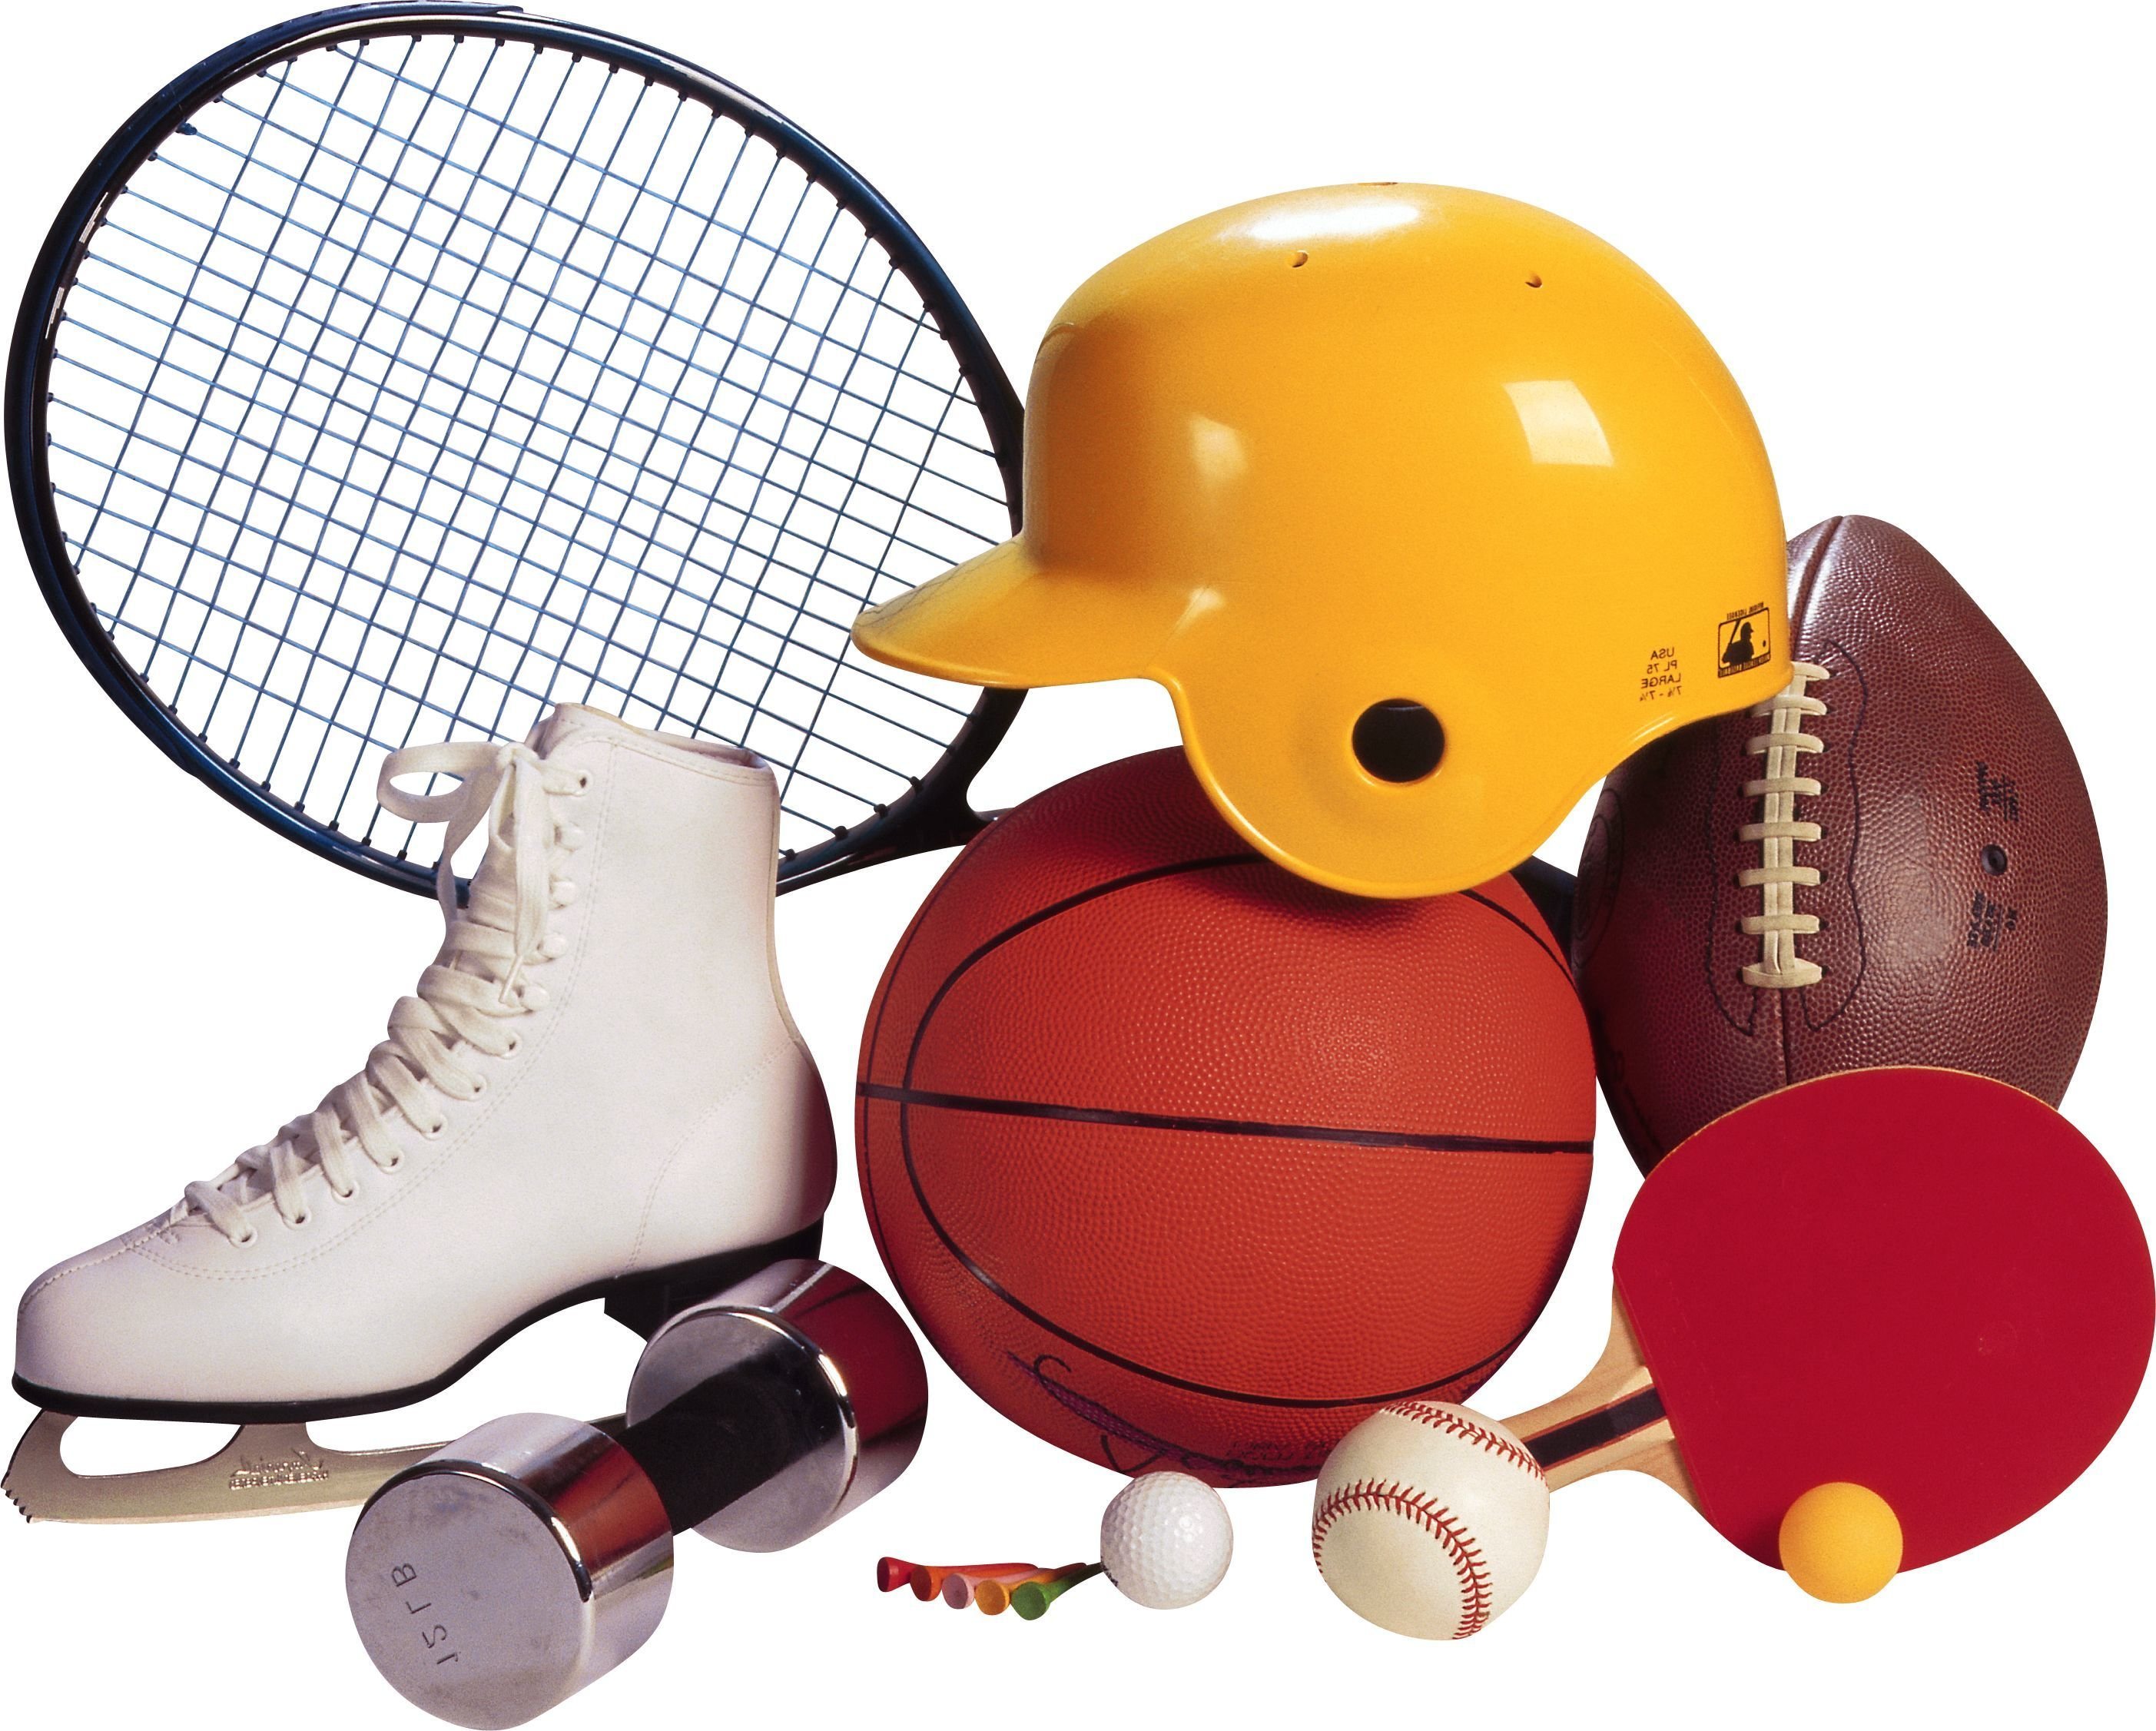 Sport items. Спортивные принадлежности. Спортивные атрибуты. Спортинвентарь. Спортивный инвентарь для детей.